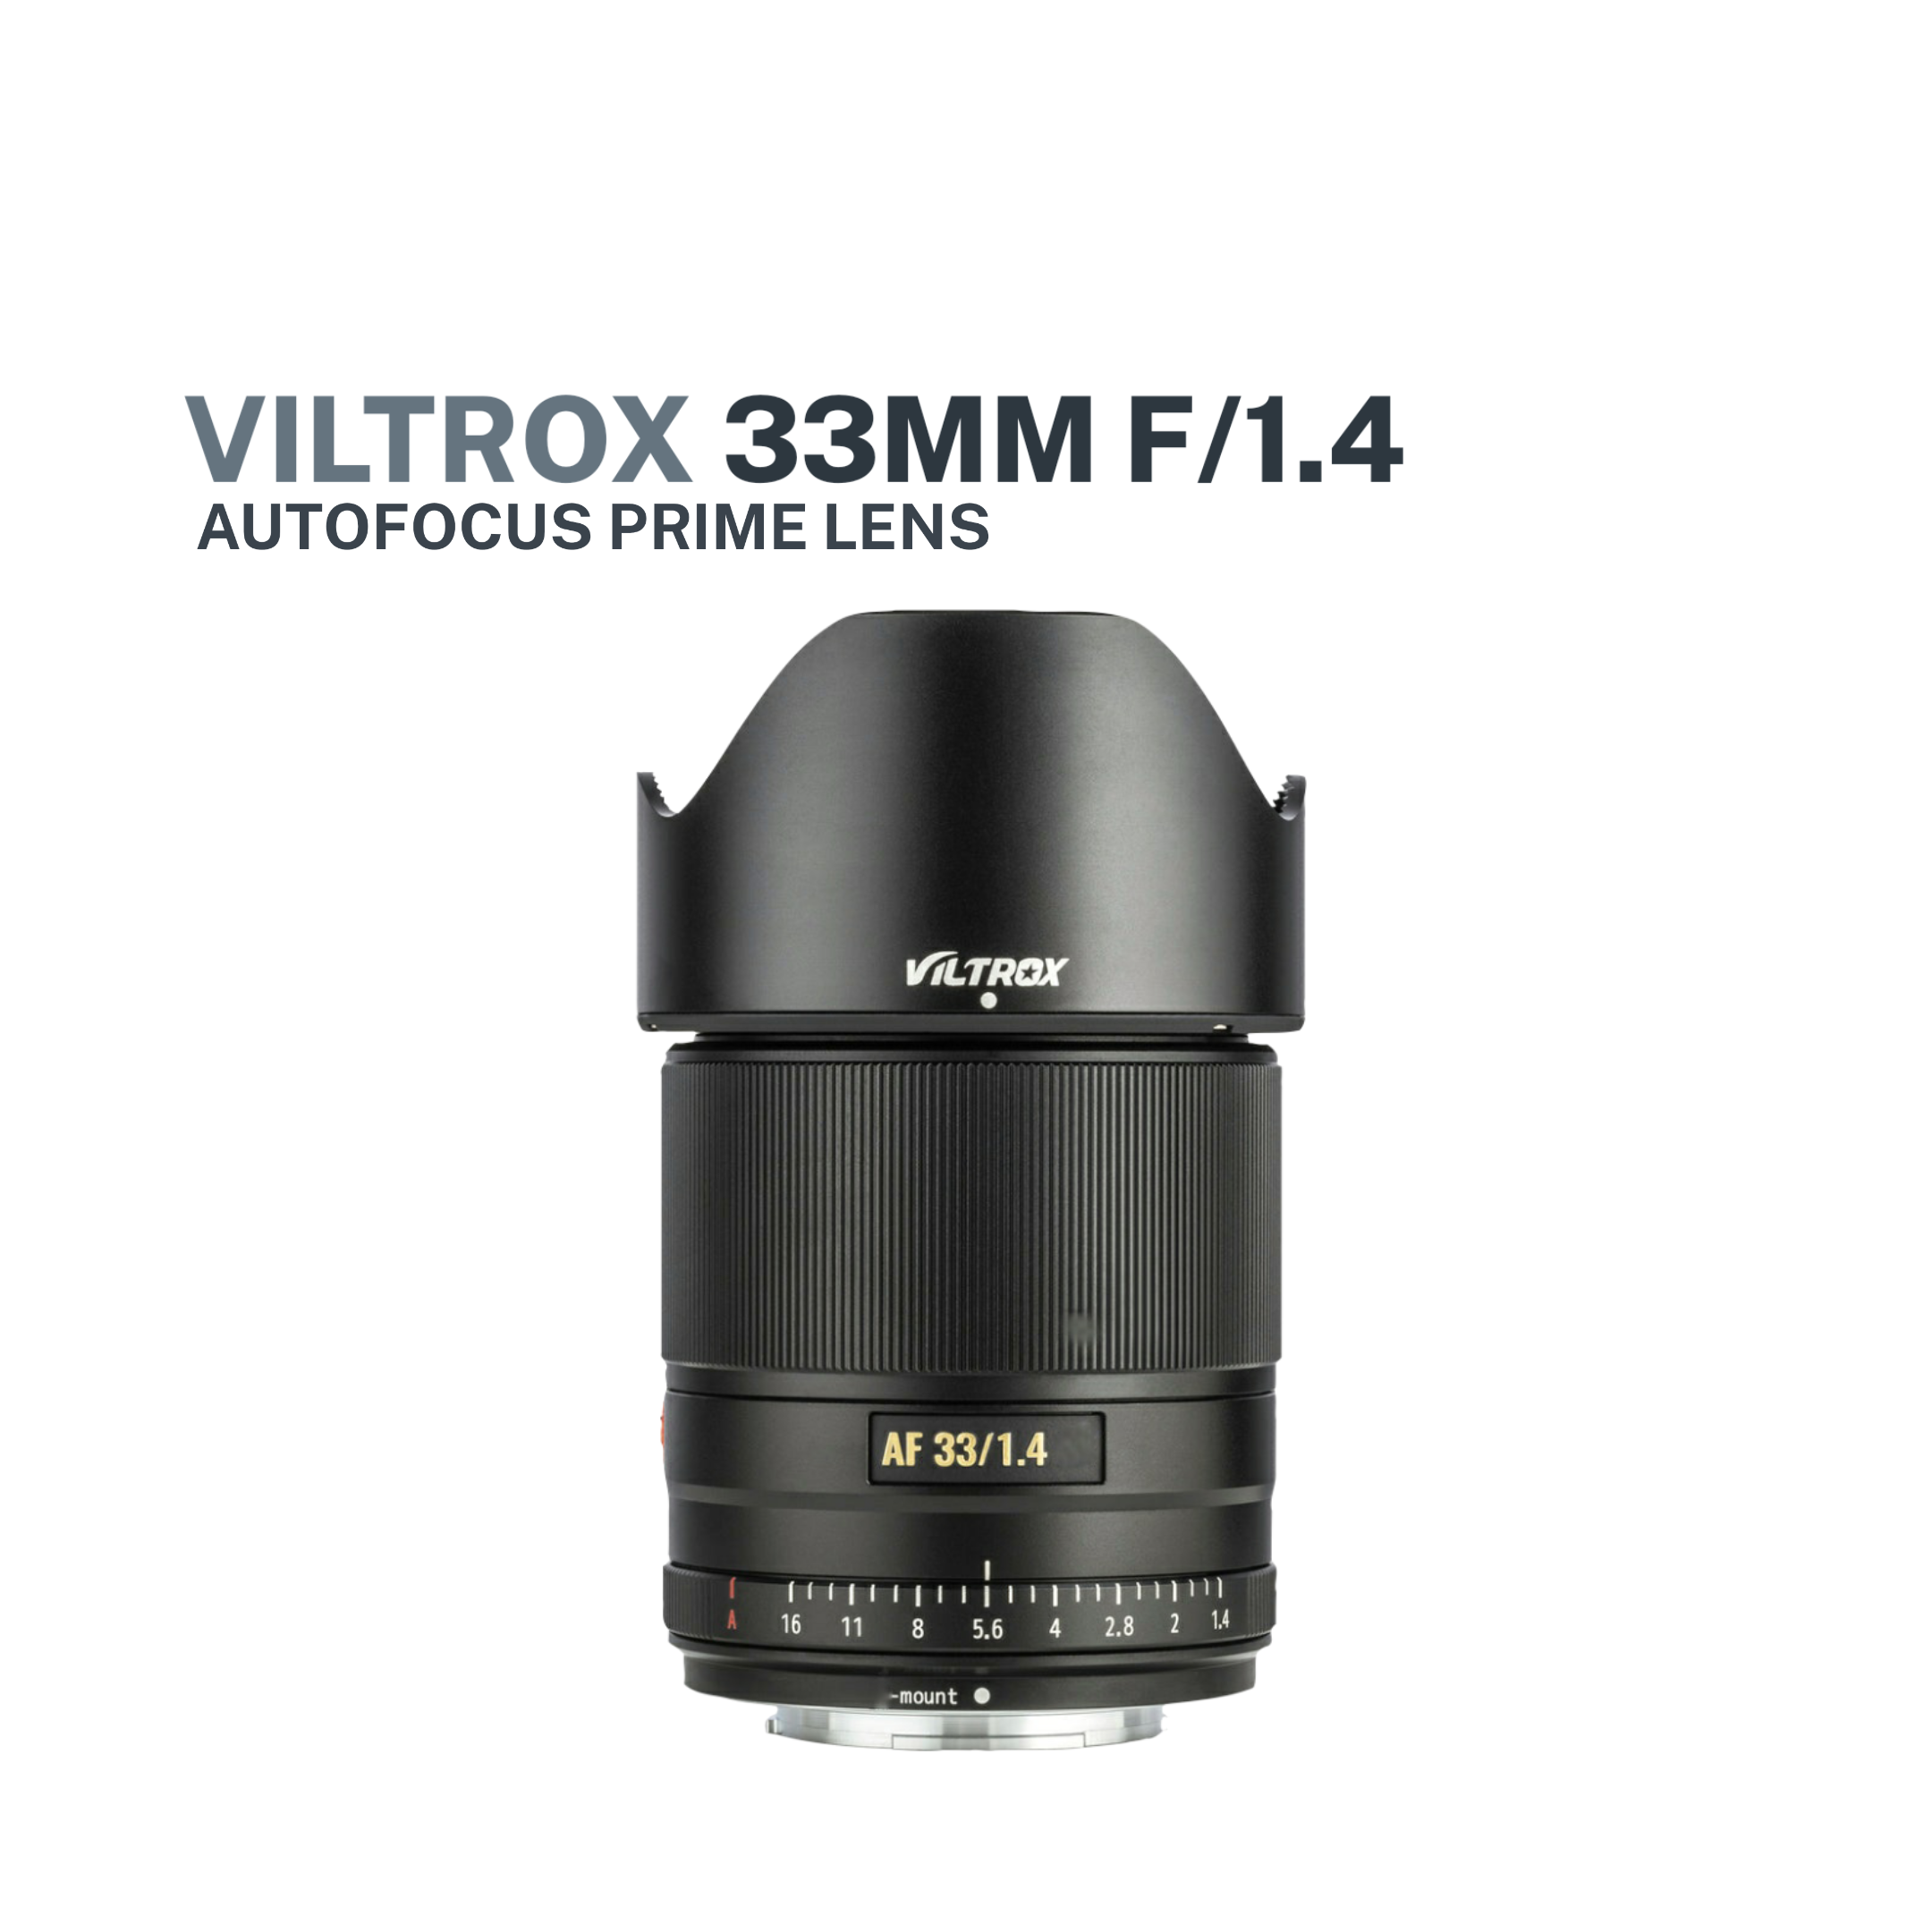 Viltrox 33mm F1.4